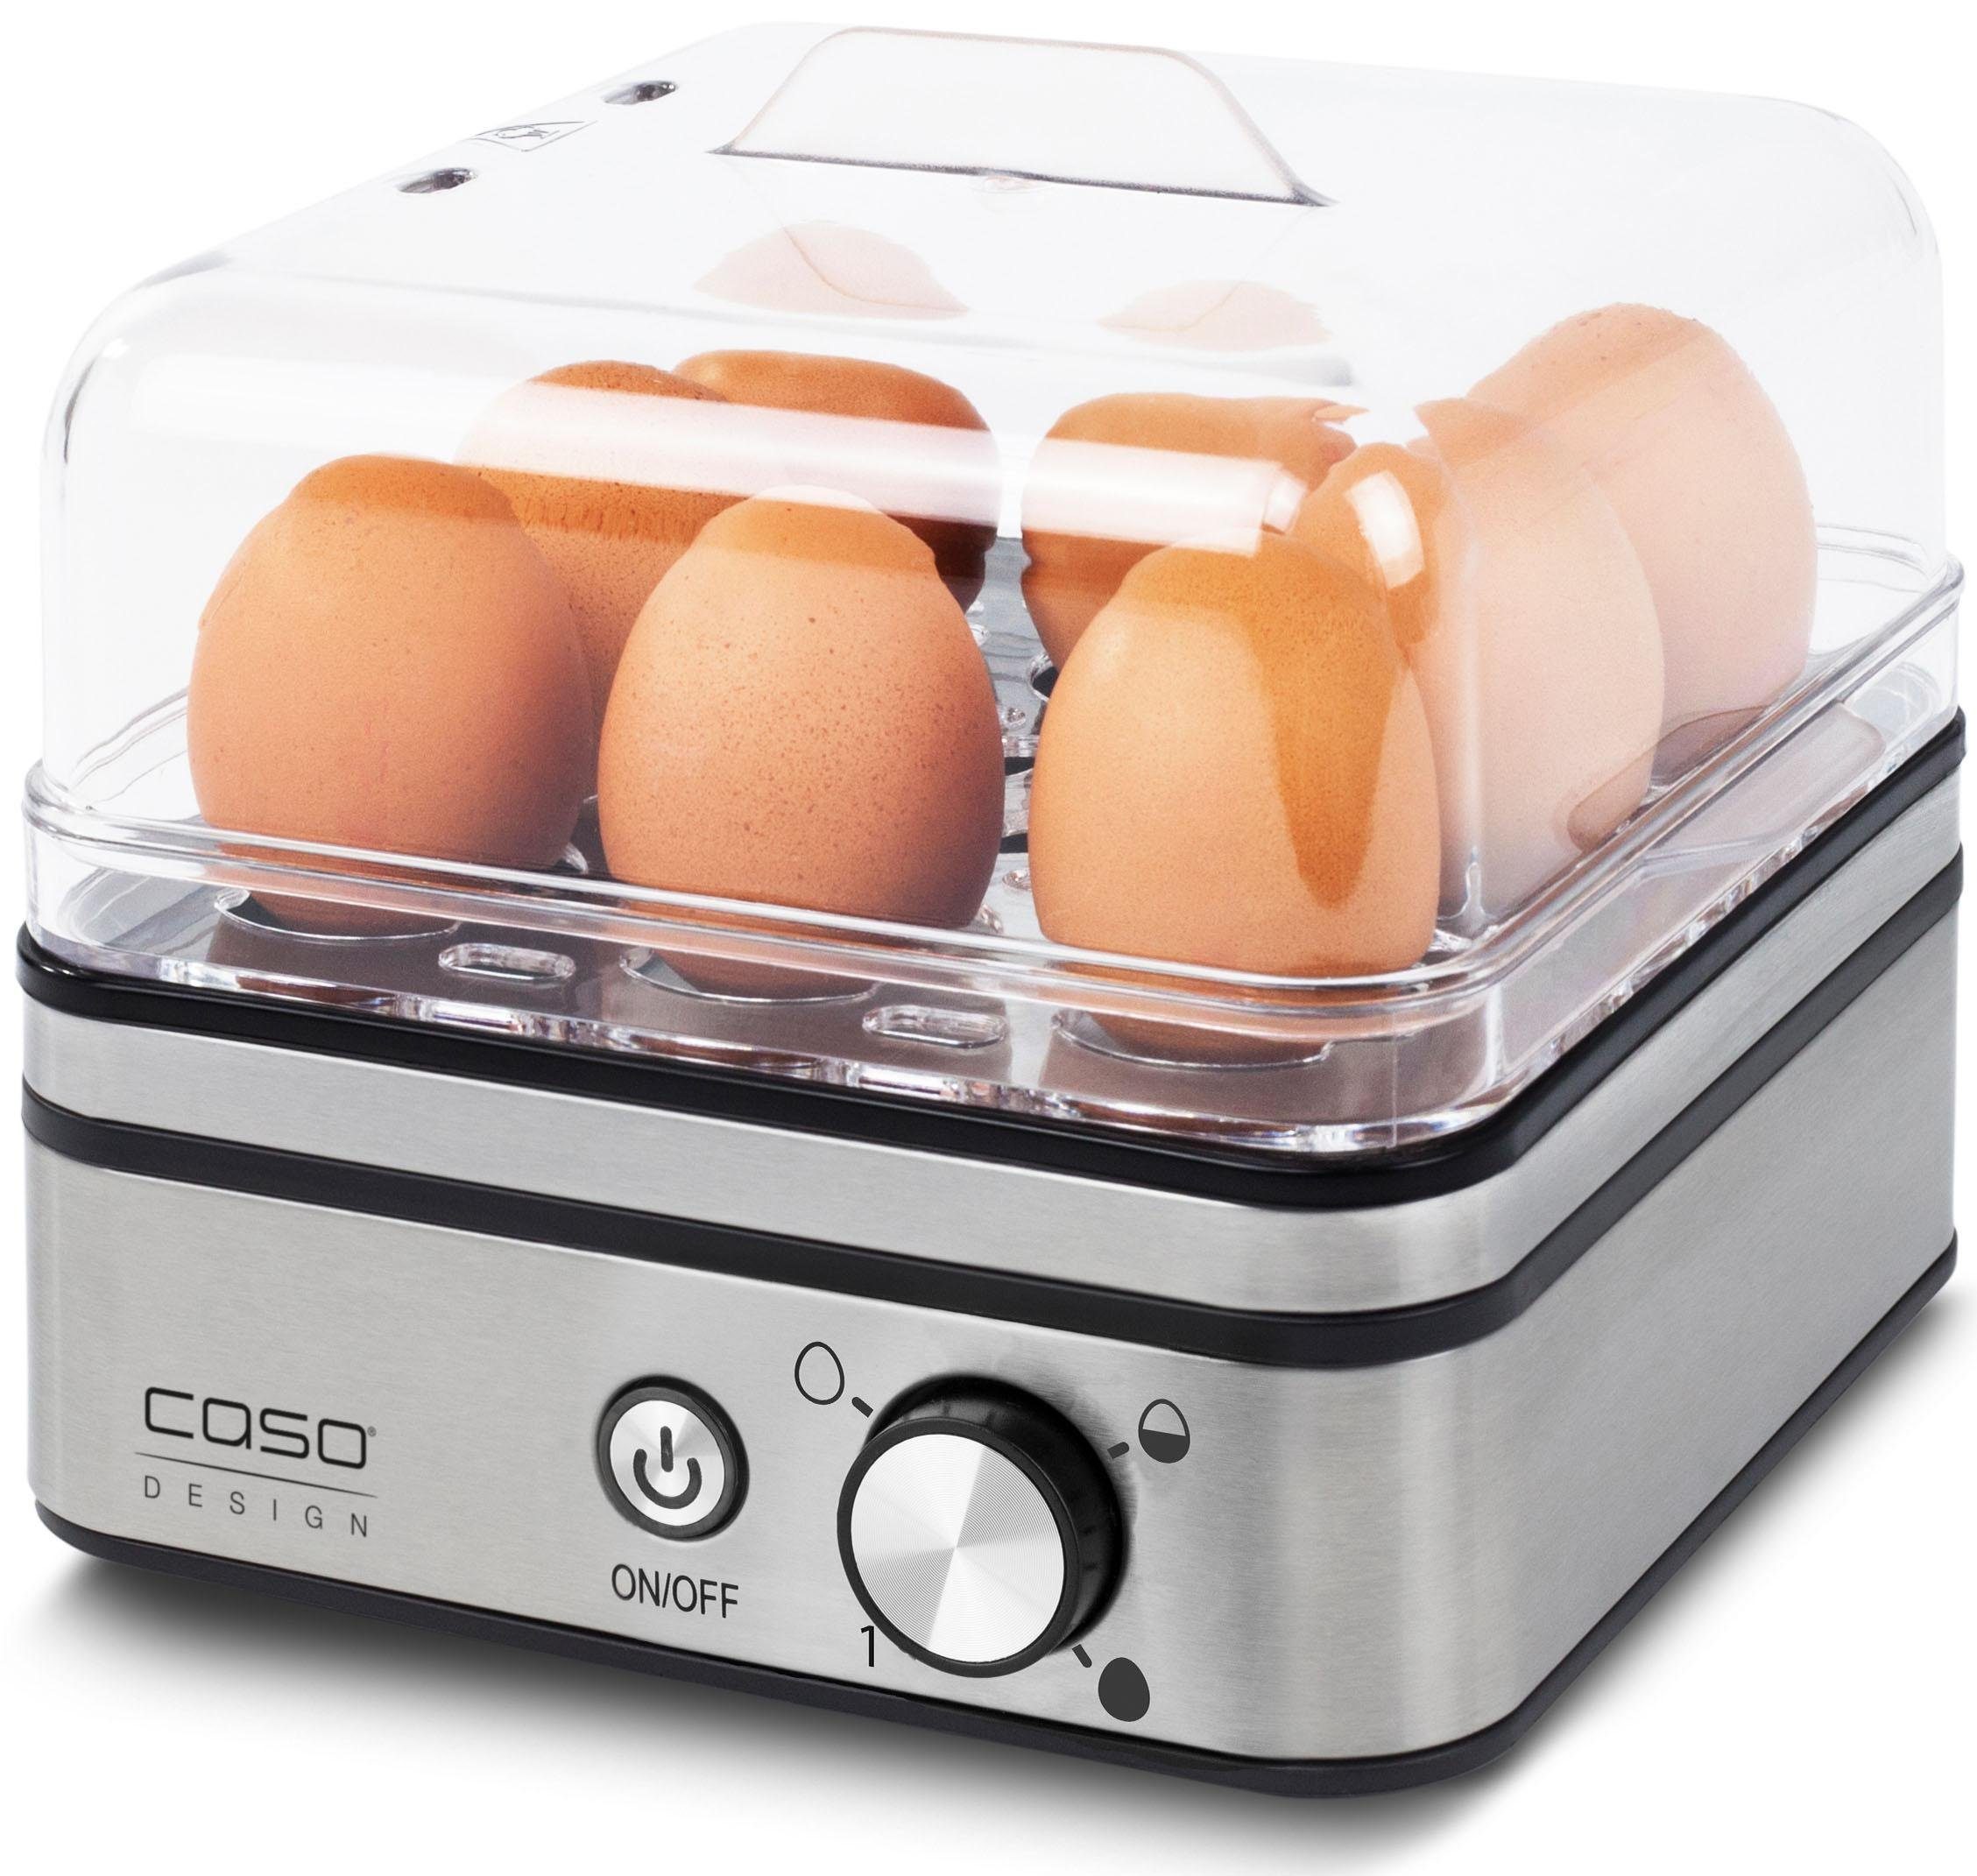 Caso Eierkocher 2771-E9, 2771-E9 8 Eier inkl. Edelstahl Eierpicker, mit für 8 Eihalter herausnehmbarer für Eierkocher Messbecher Eierkocher Eier, Design